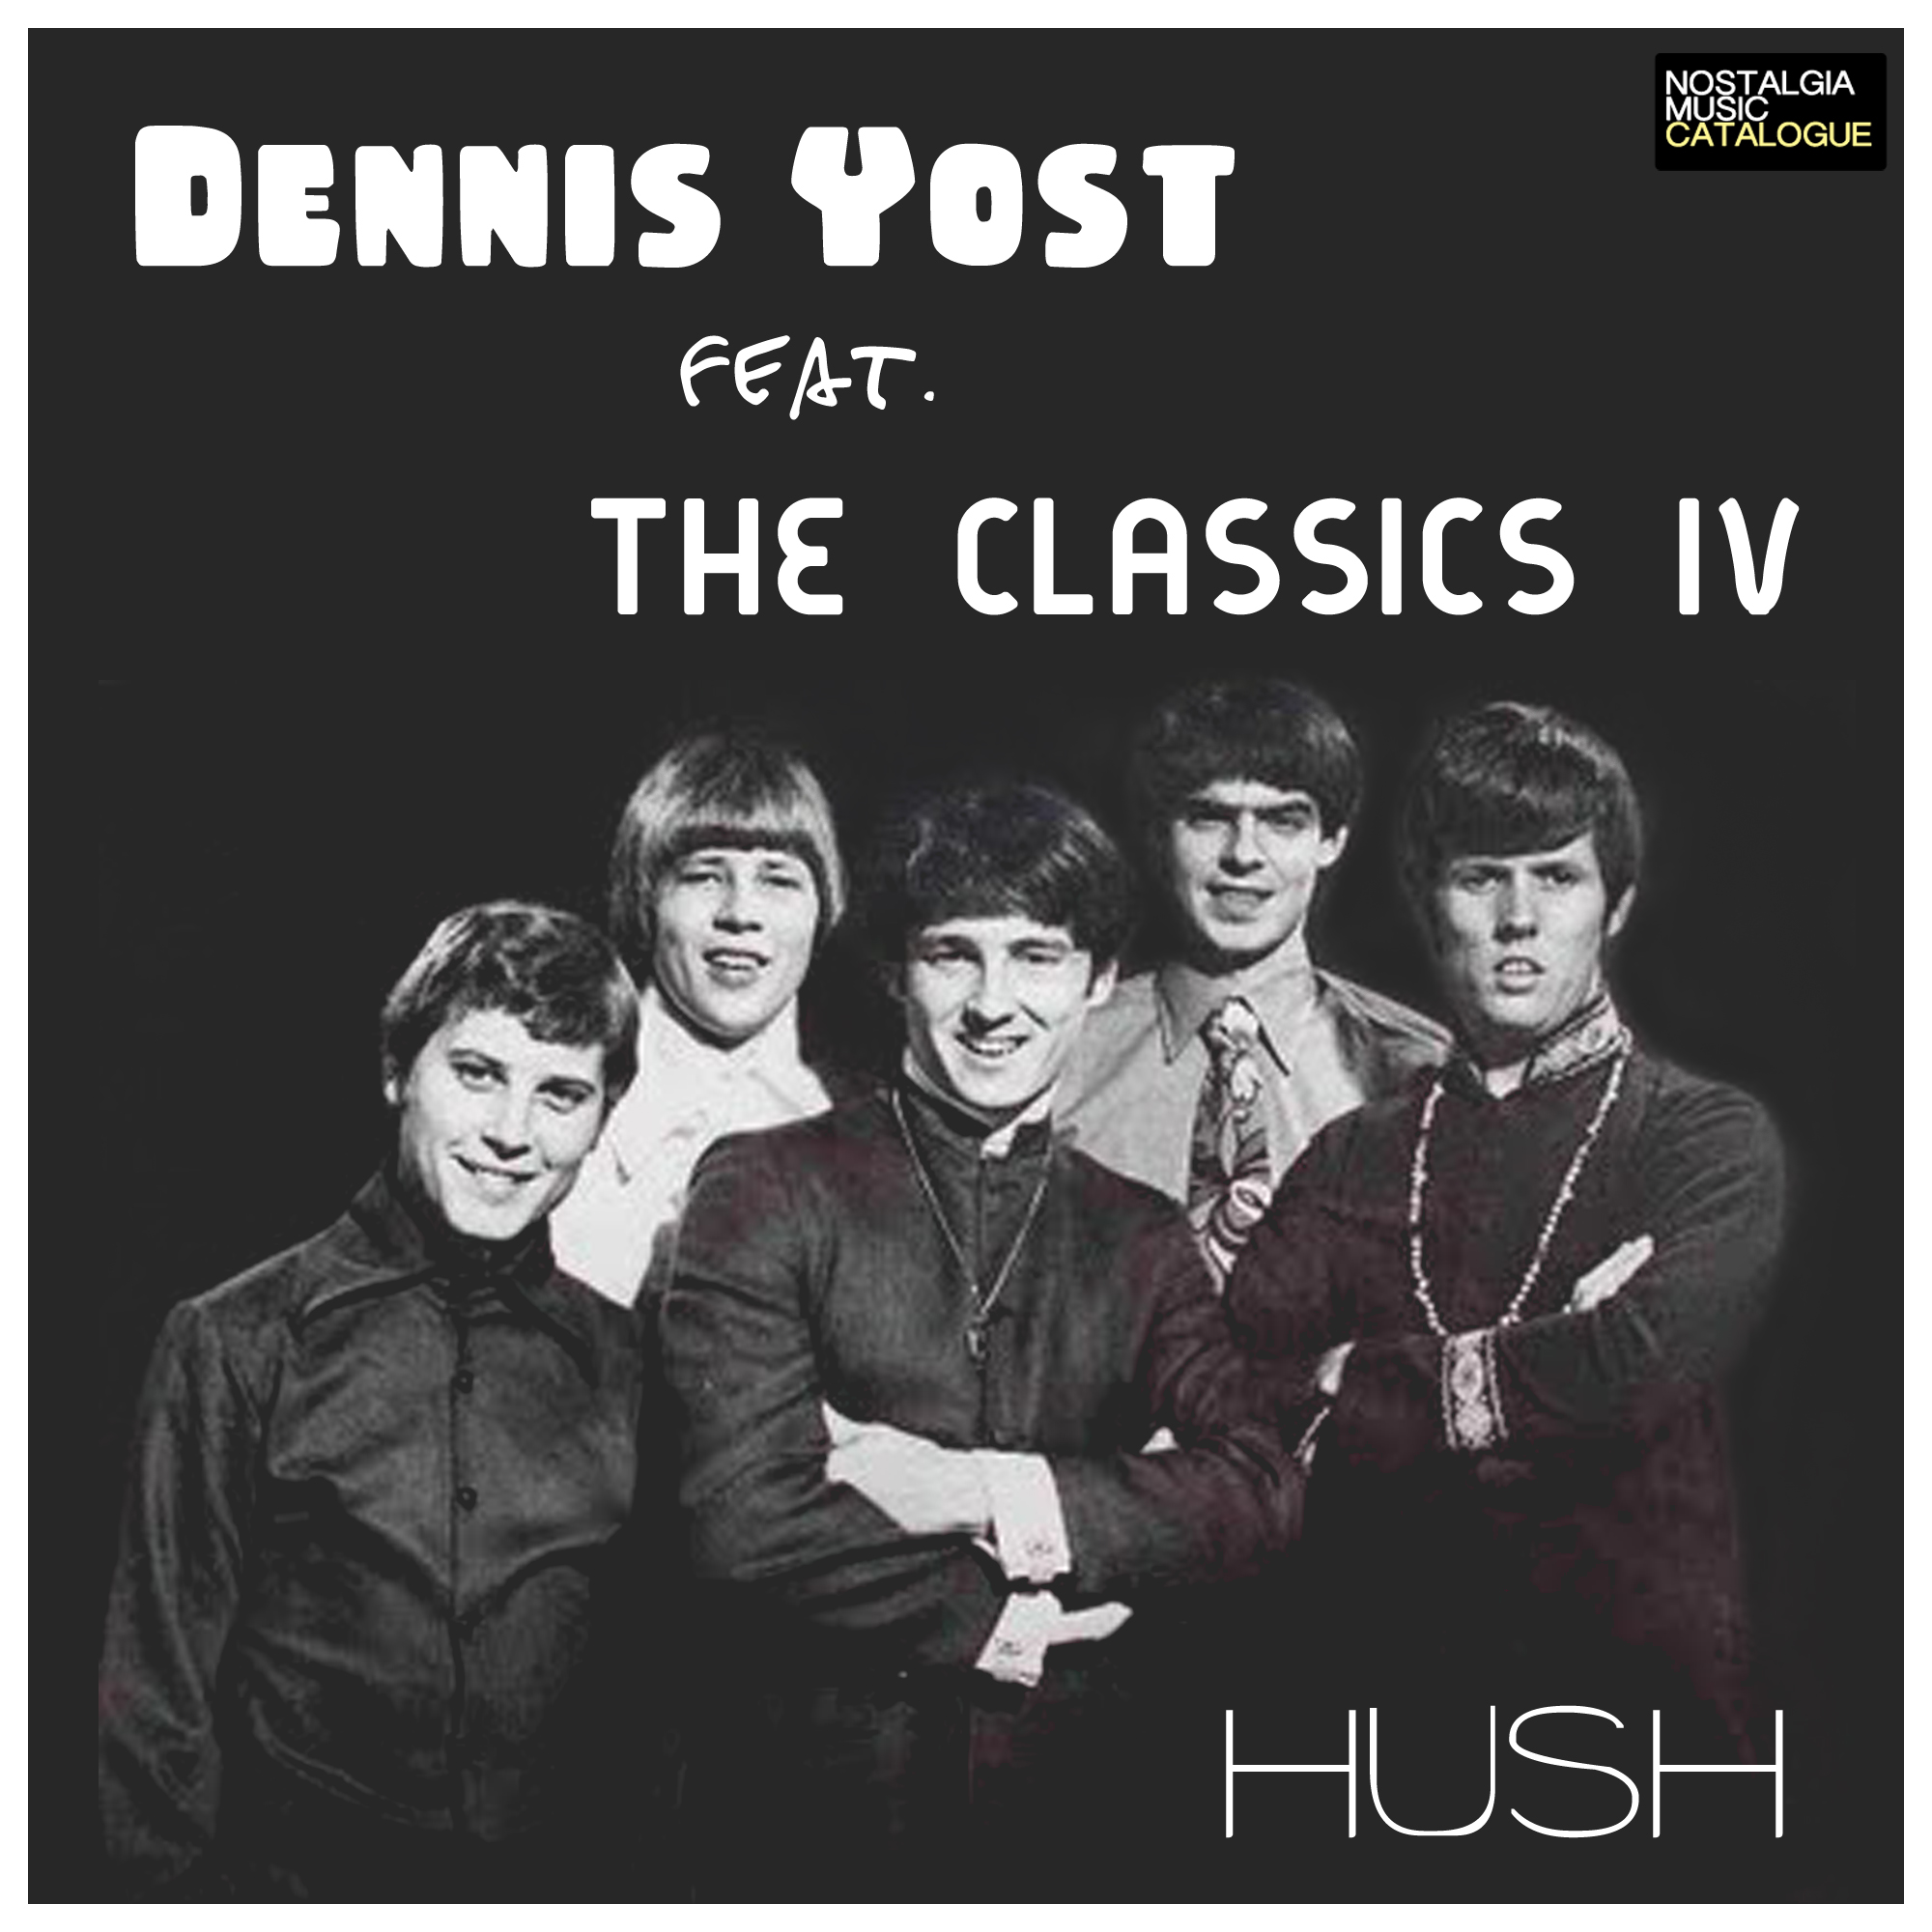 Dennis Yost & The Classics IV - Hush - Nostalgia Music Catalogue